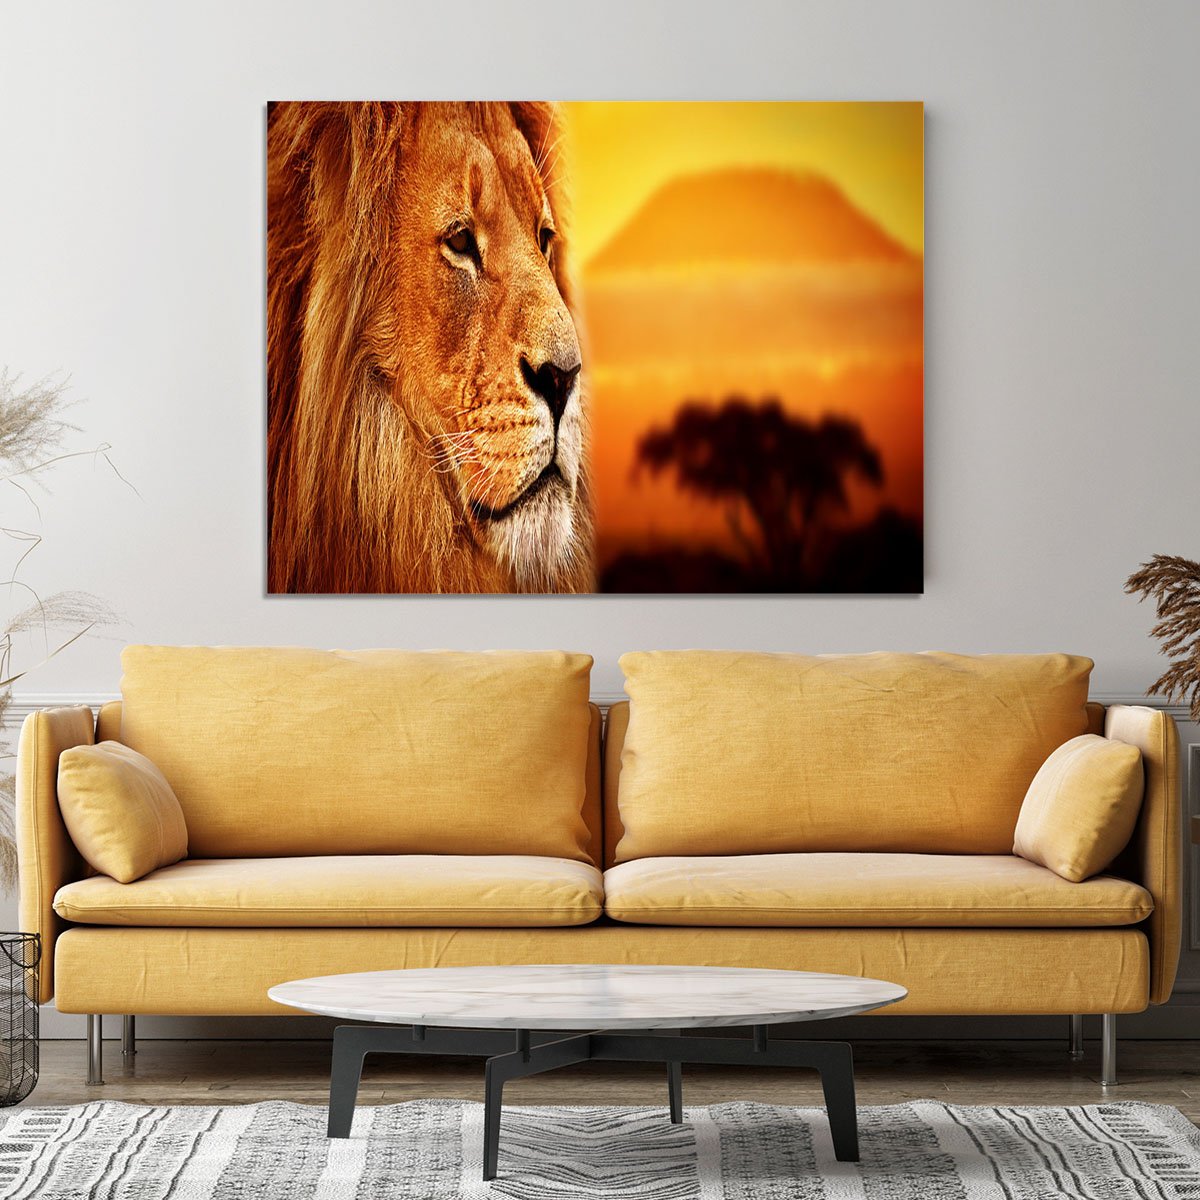 Lion portrait on savanna landscape Canvas Print or Poster